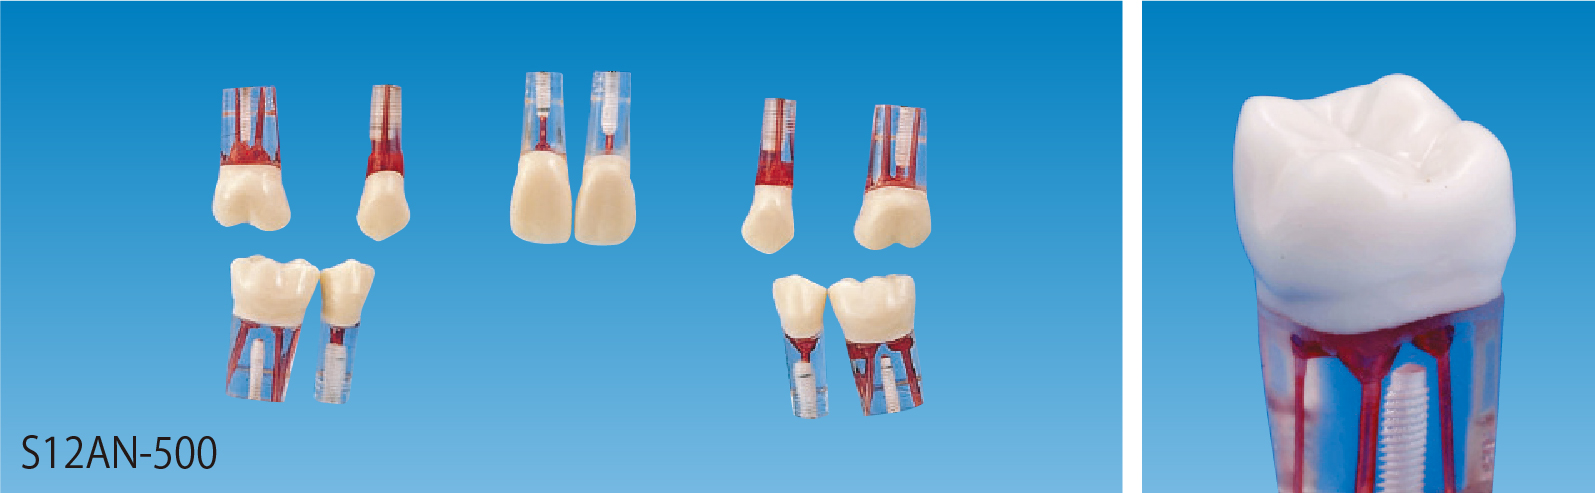 歯内療法実習用模型歯 [S12AN-500]